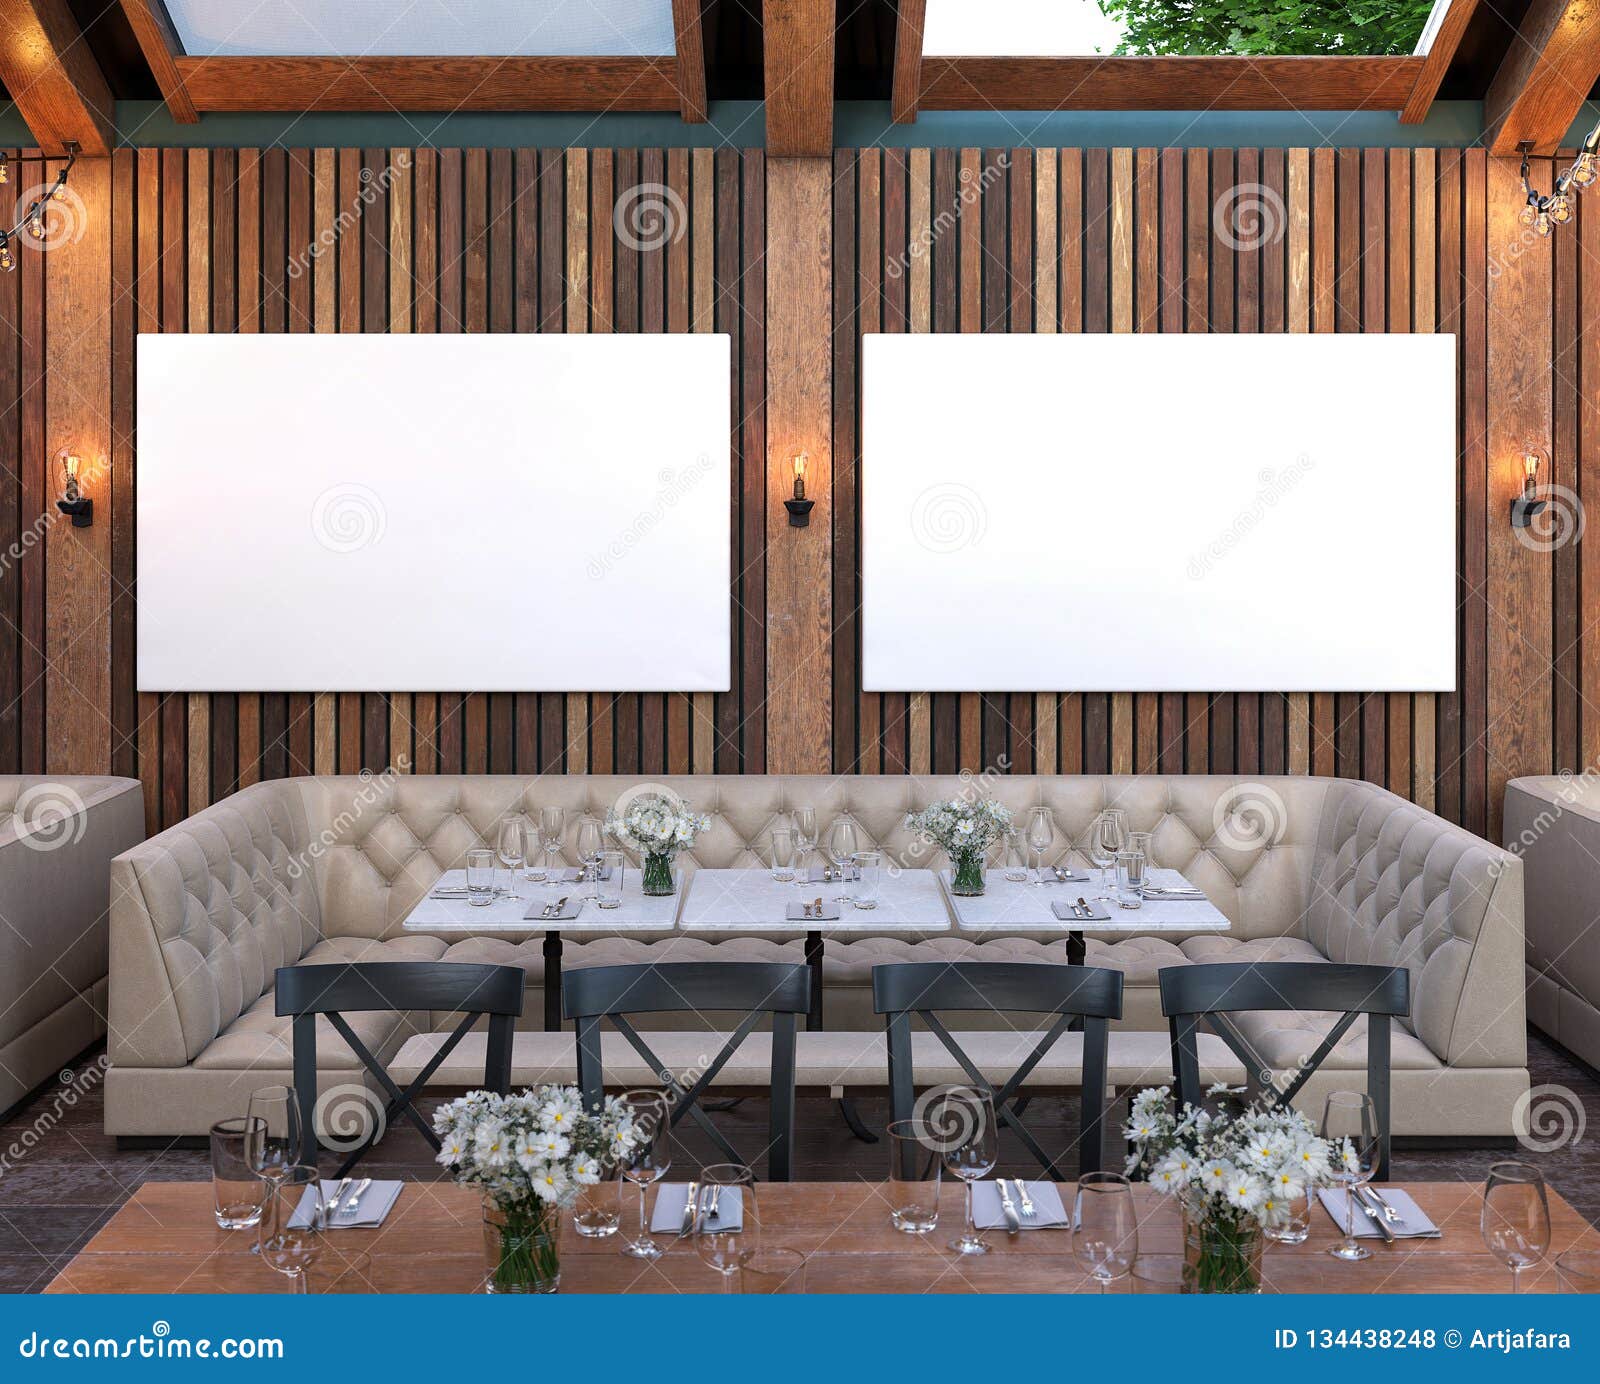 Download Mock Up Poster Frame In Cafe Interior Background, Modern Outdoor Bar Restaurant Stock ...